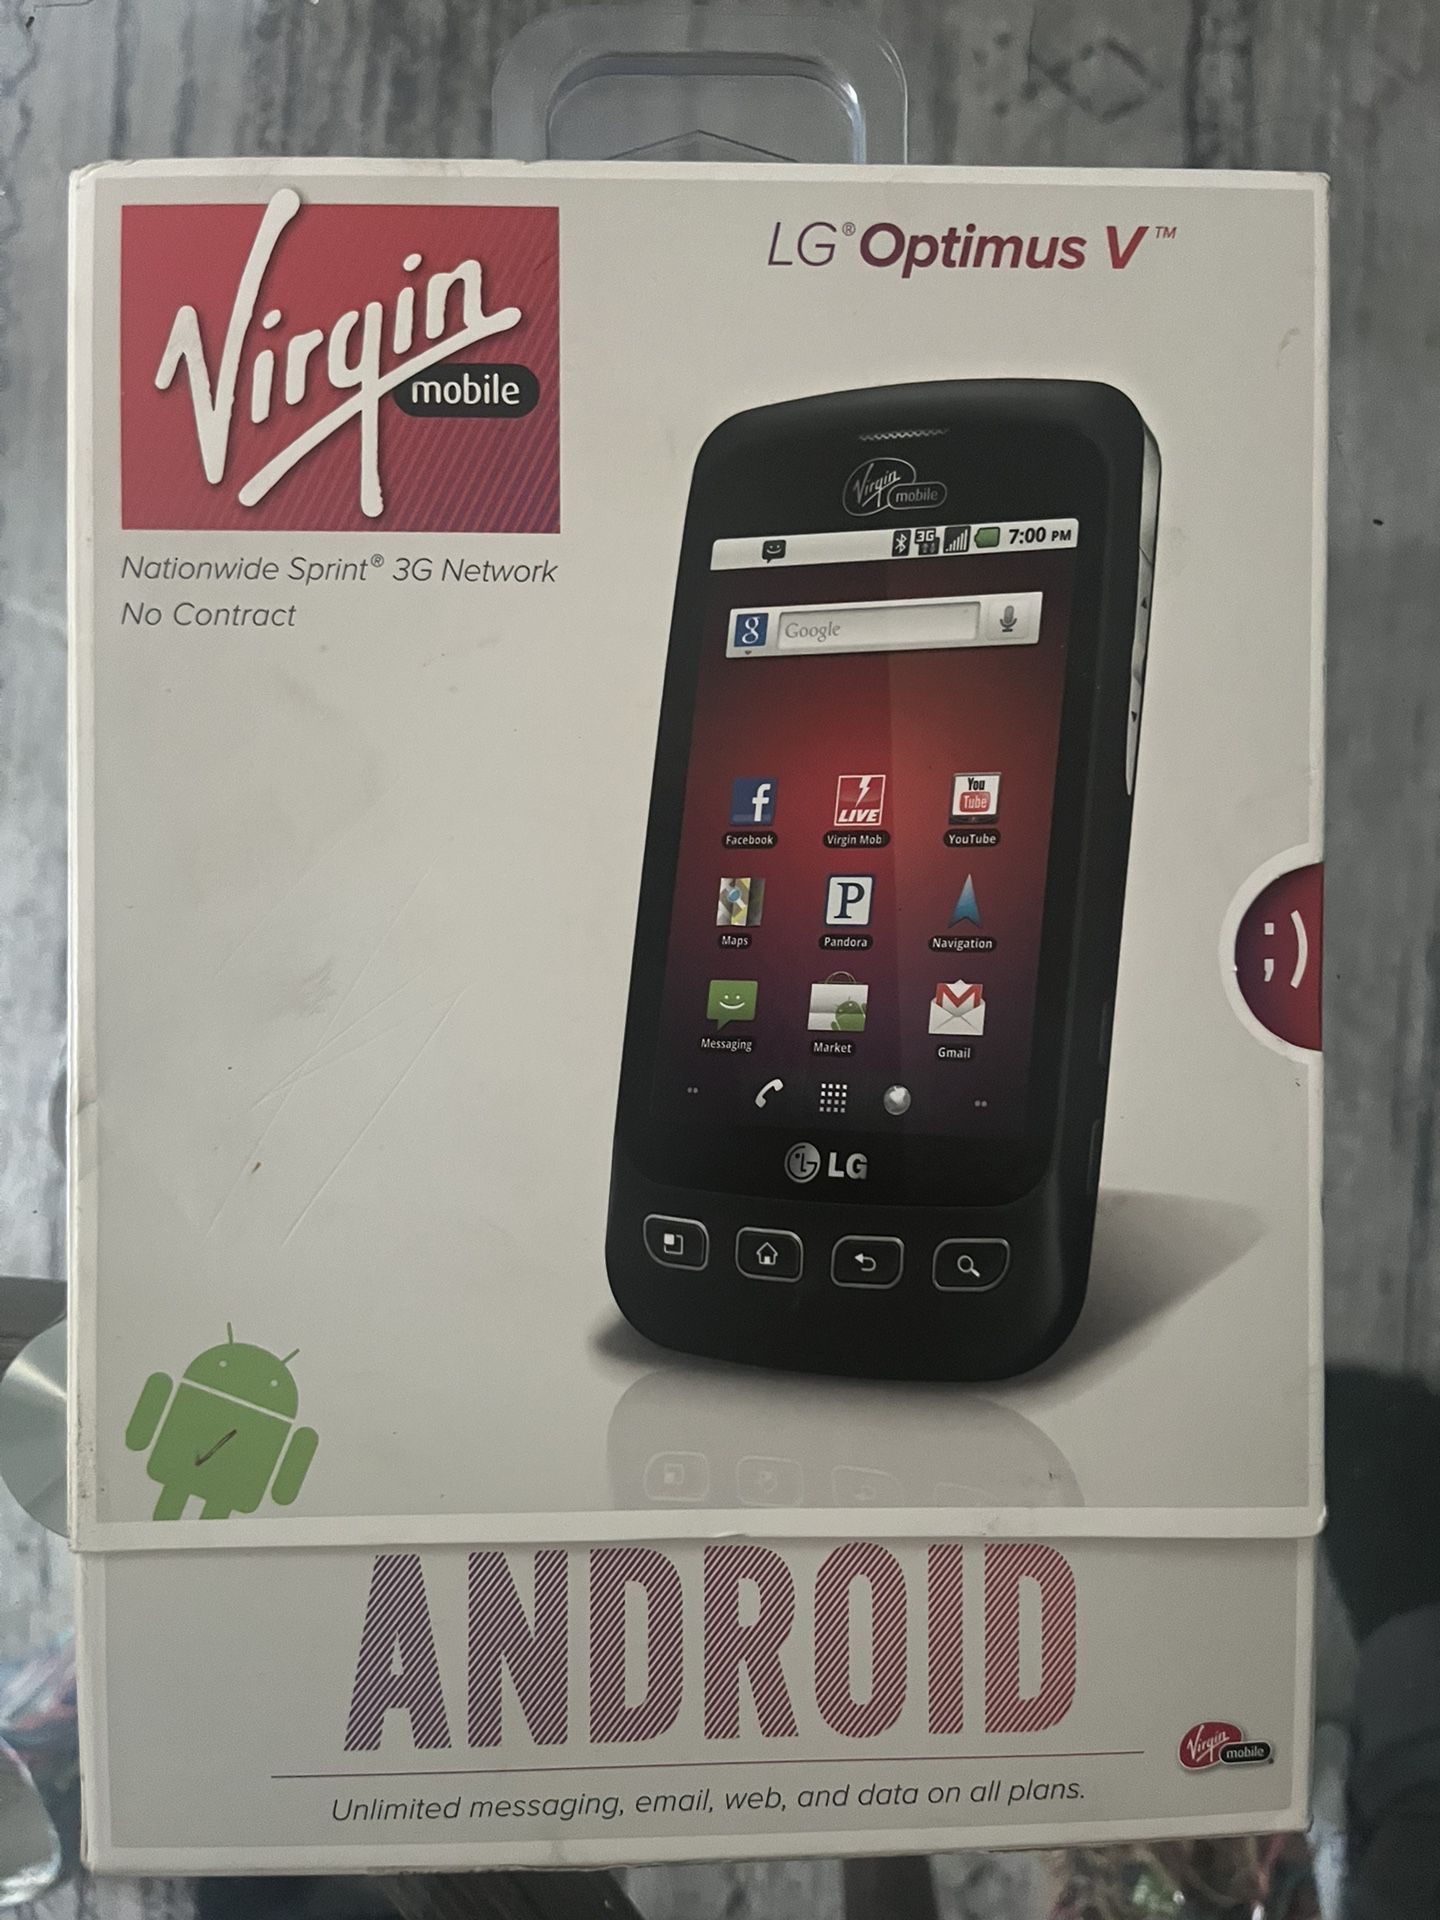 LG Optimus V™ Virgin Mobile brand new in the box 